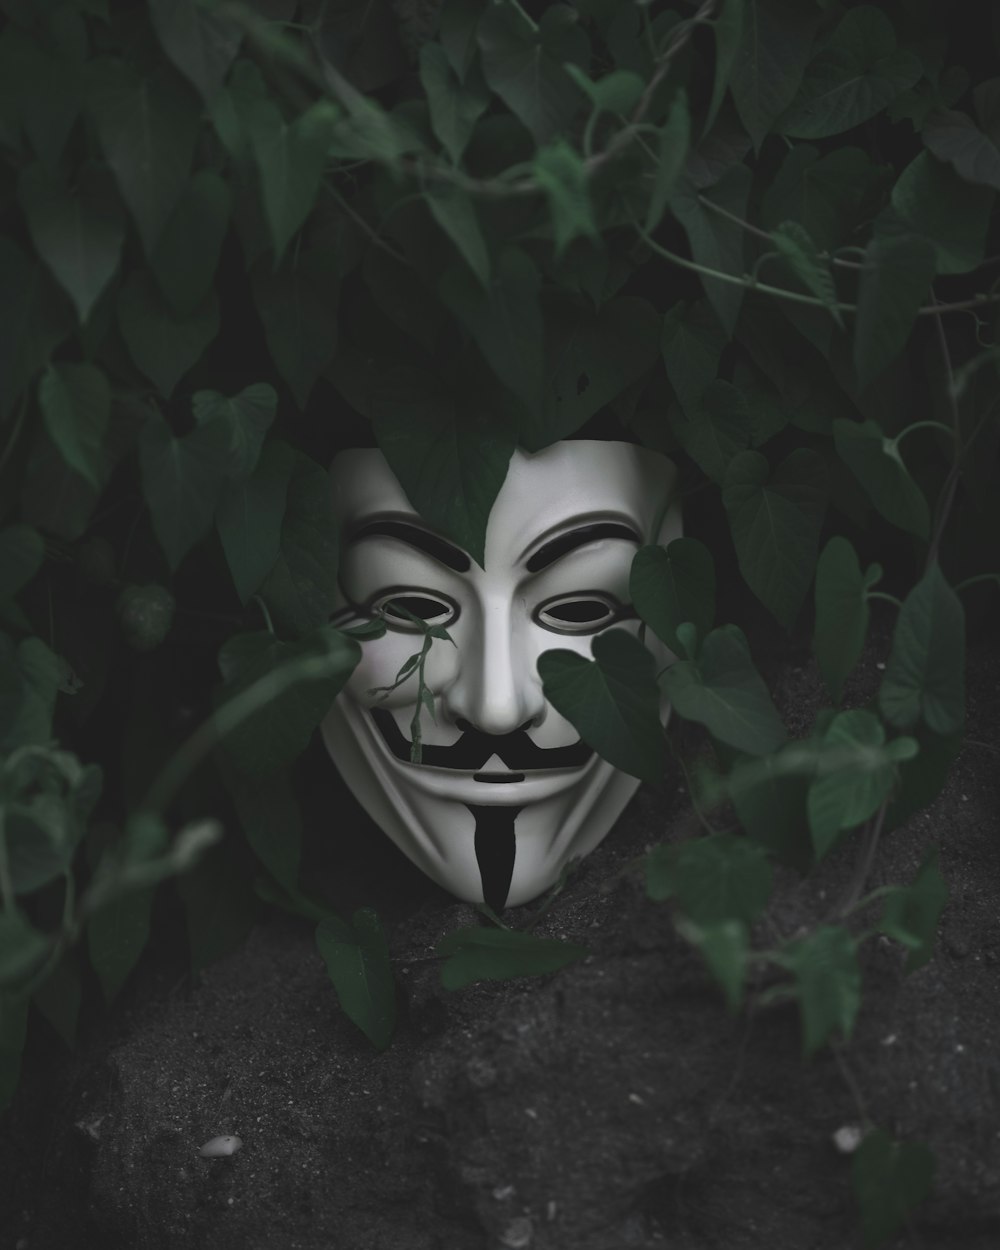 Guy Fawkes mask on green leafed plant photo – Free Grey Image on Unsplash